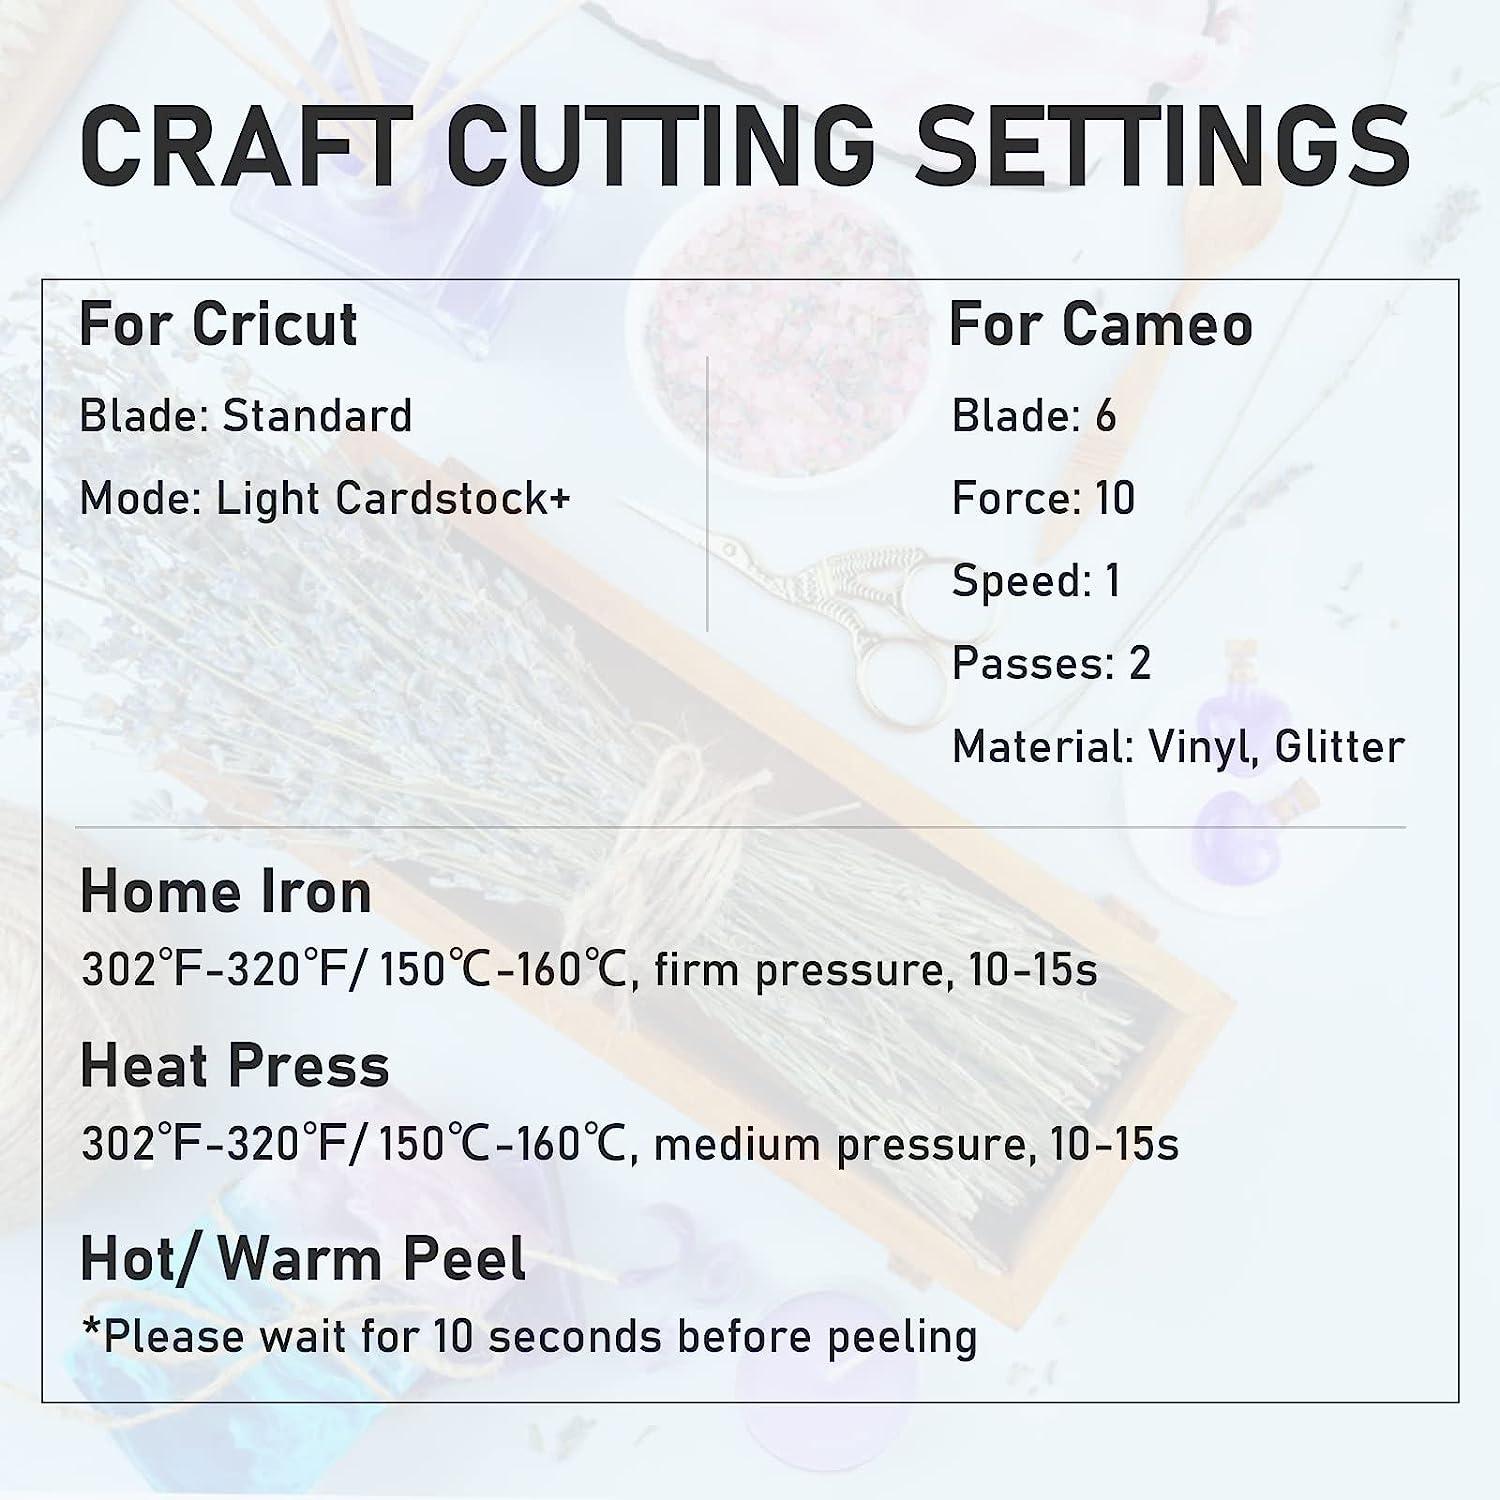 Glitter Heat Transfer Vinyl for Cricut